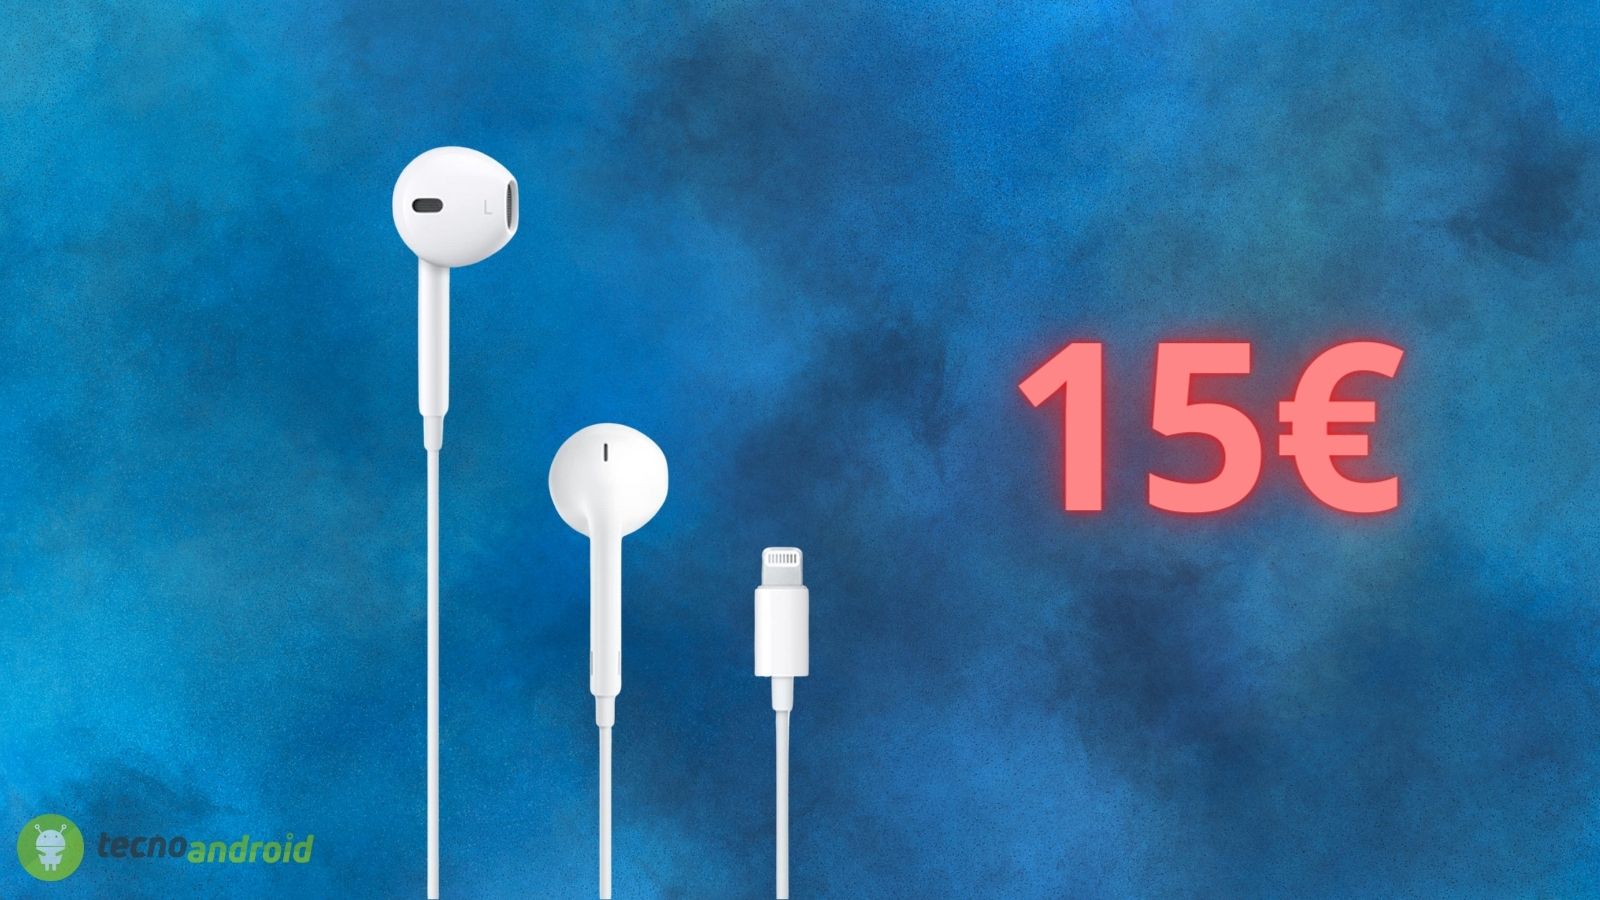 Apple EarPods: prezzo di solo 15€ attivo su Amazon